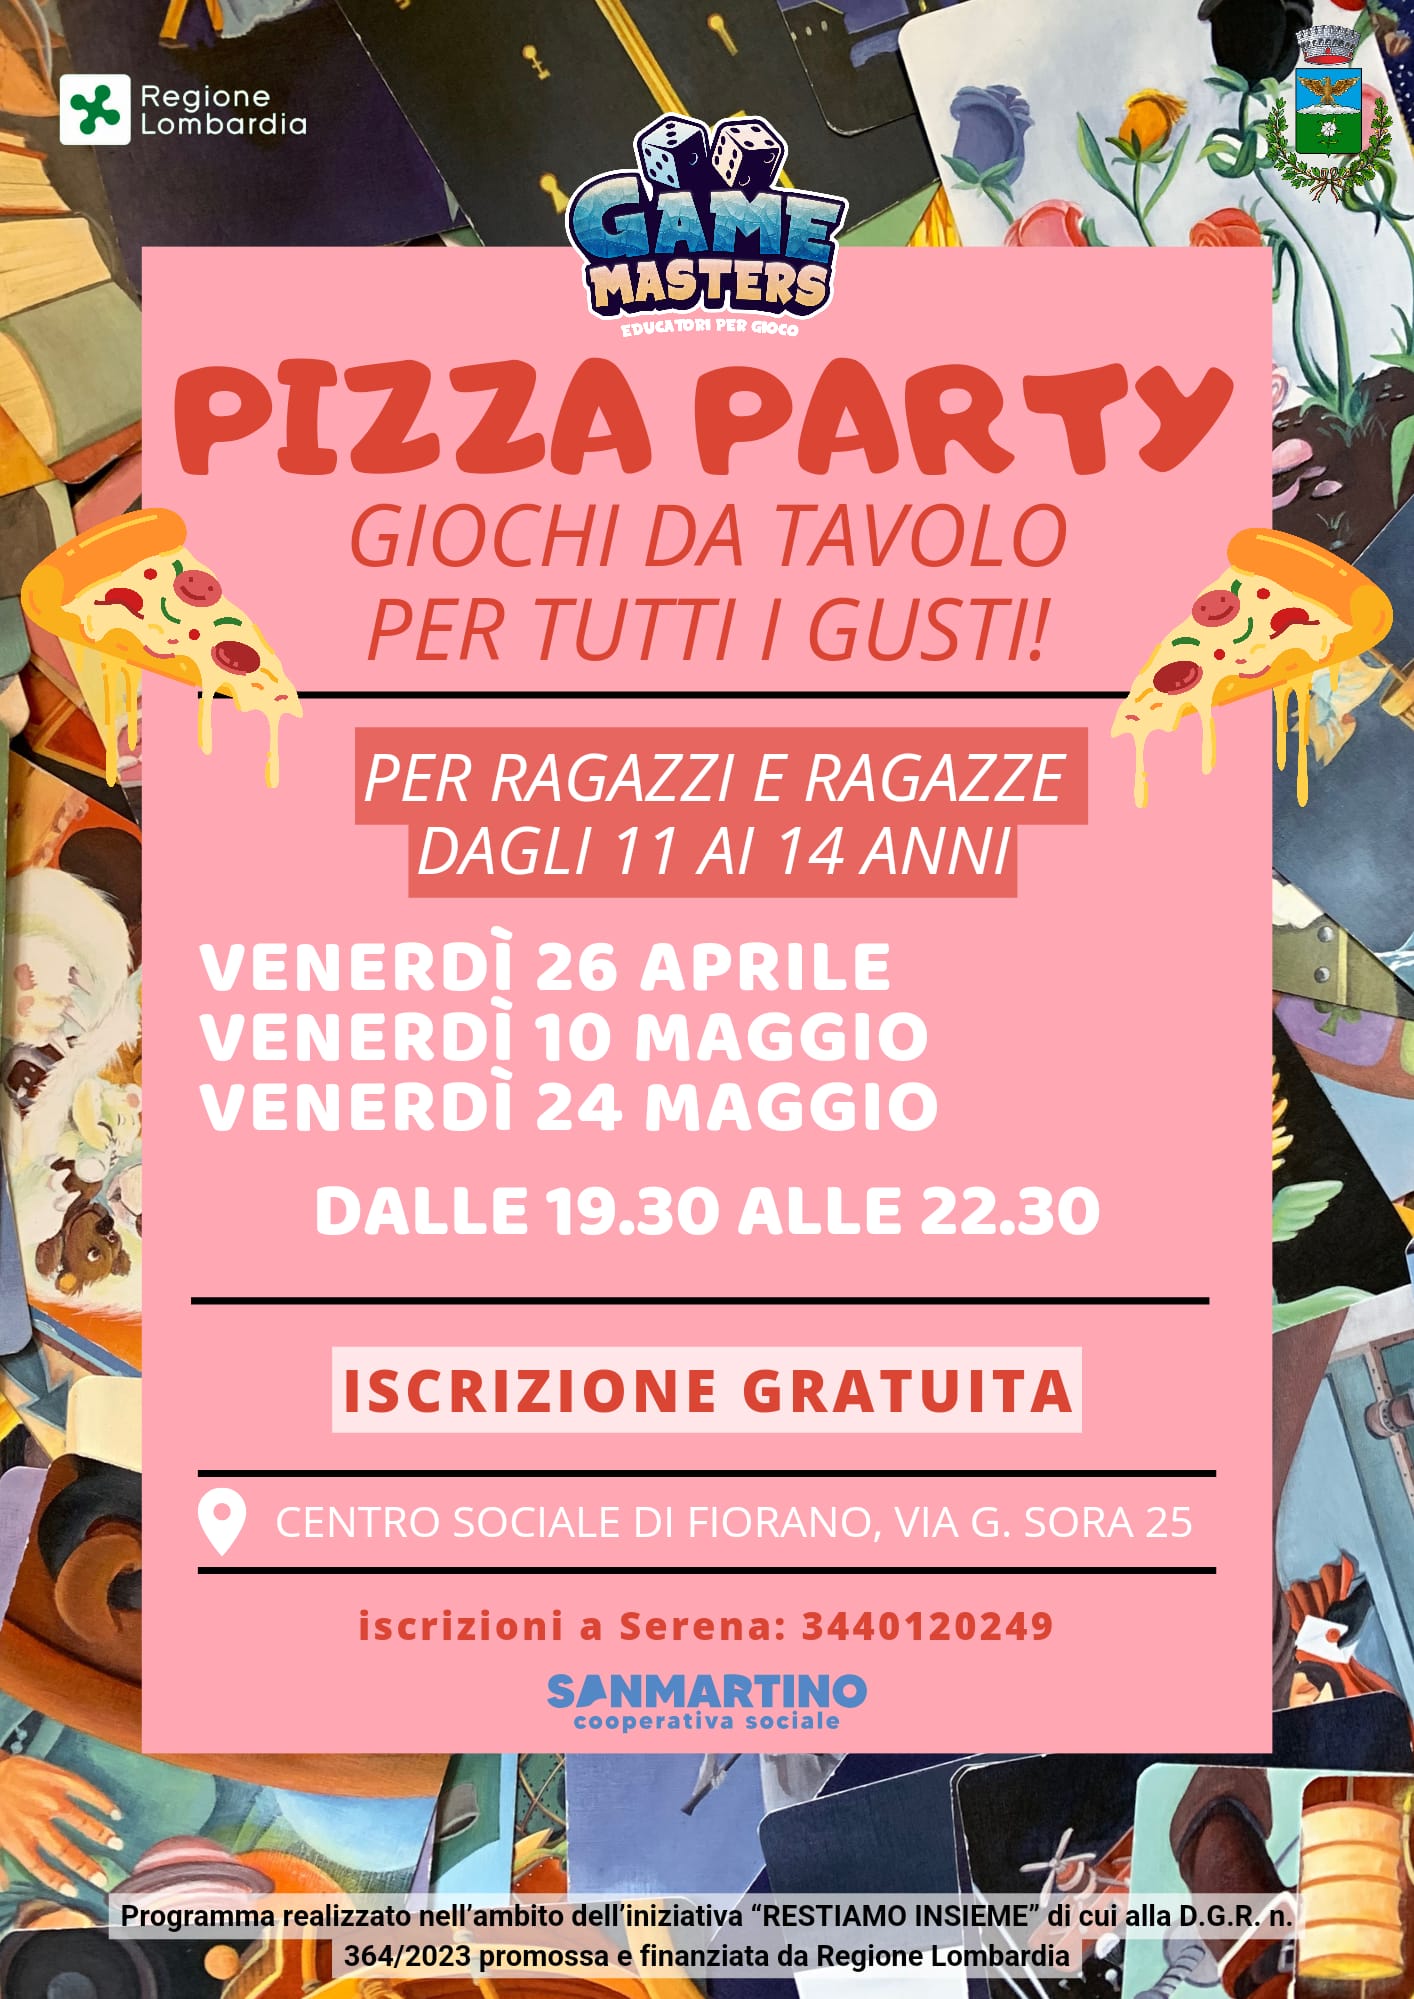 Immagine che raffigura PIZZA PARTY per ragazzi dagli 11 ai 14 anni